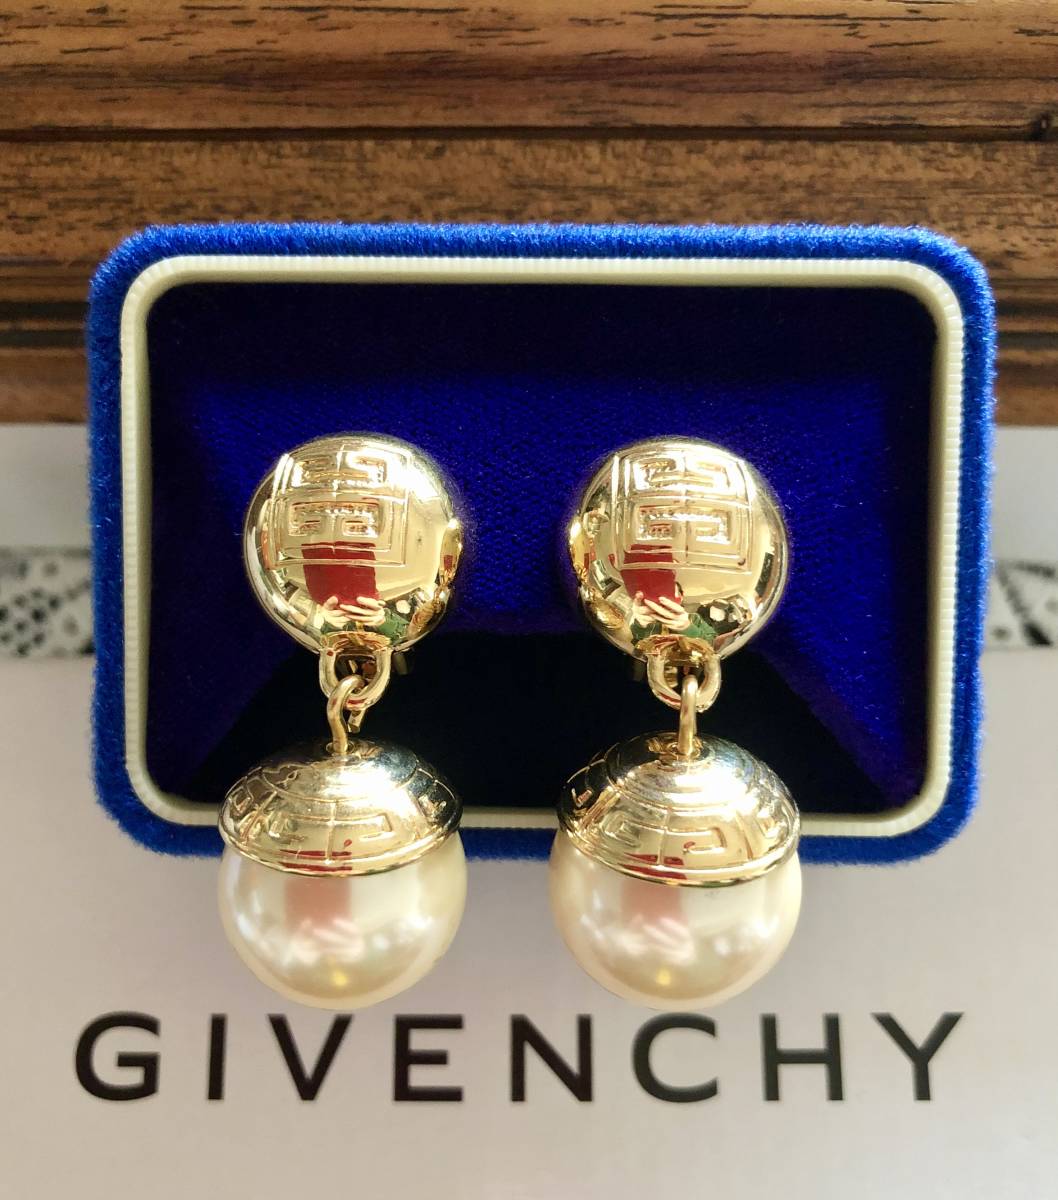  Vintage прекрасный товар * высшее ценный Old Givenchy жемчуг серьги Gold цвет кнопка type Logo скульптура подтверждение завершено *GIVENCHY Paris*New York печать 